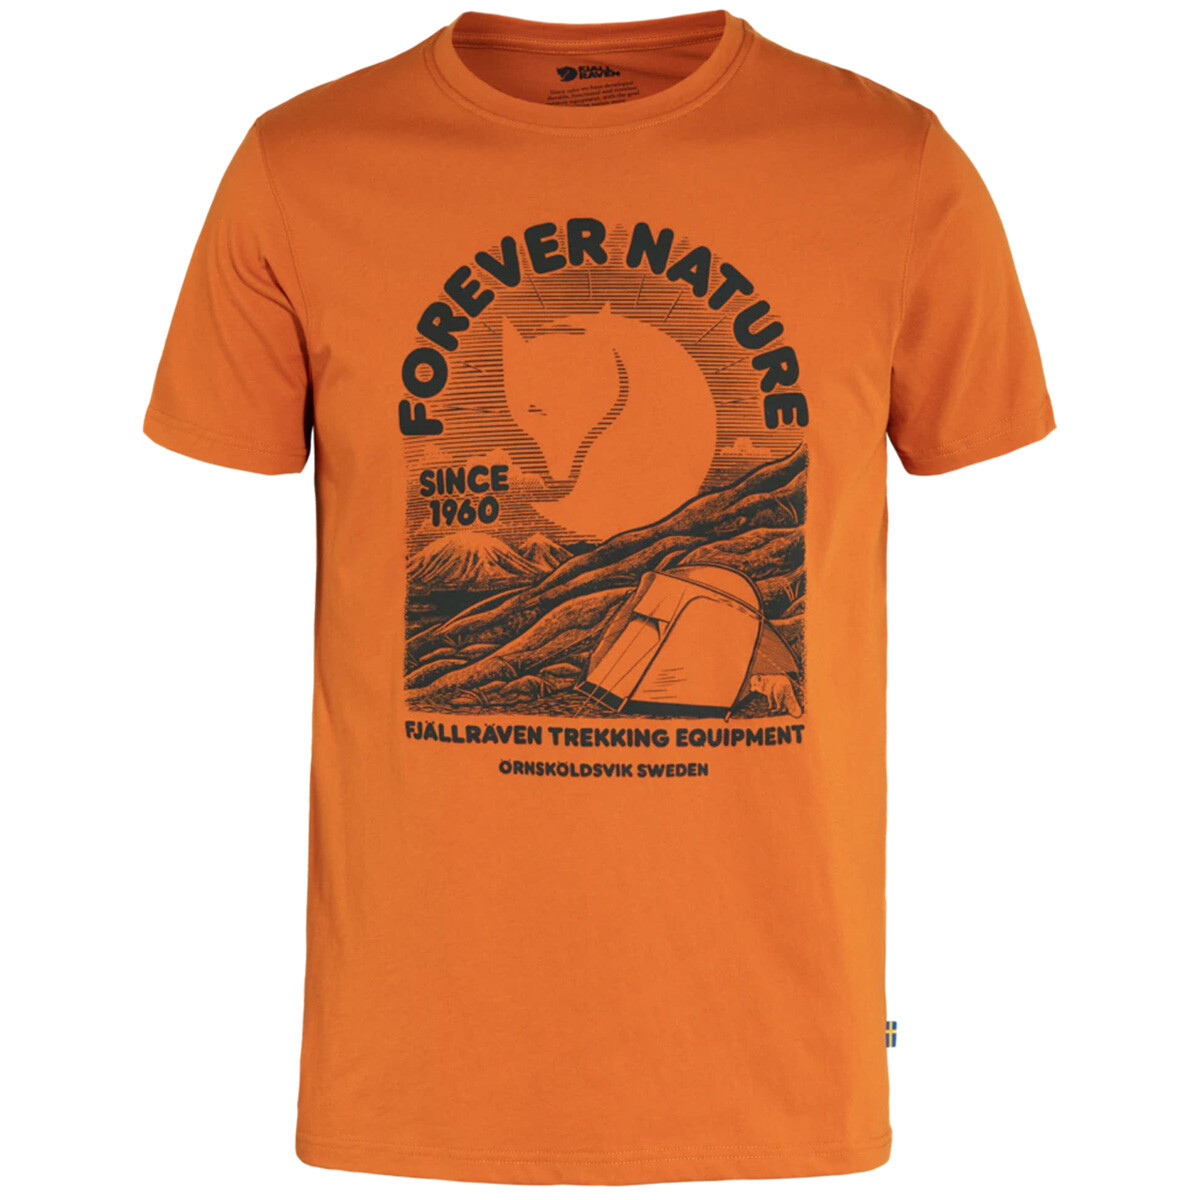 Billede af Fjällräven Equipment T-shirt (Sunset Orange, XL) hos Specialbutikken